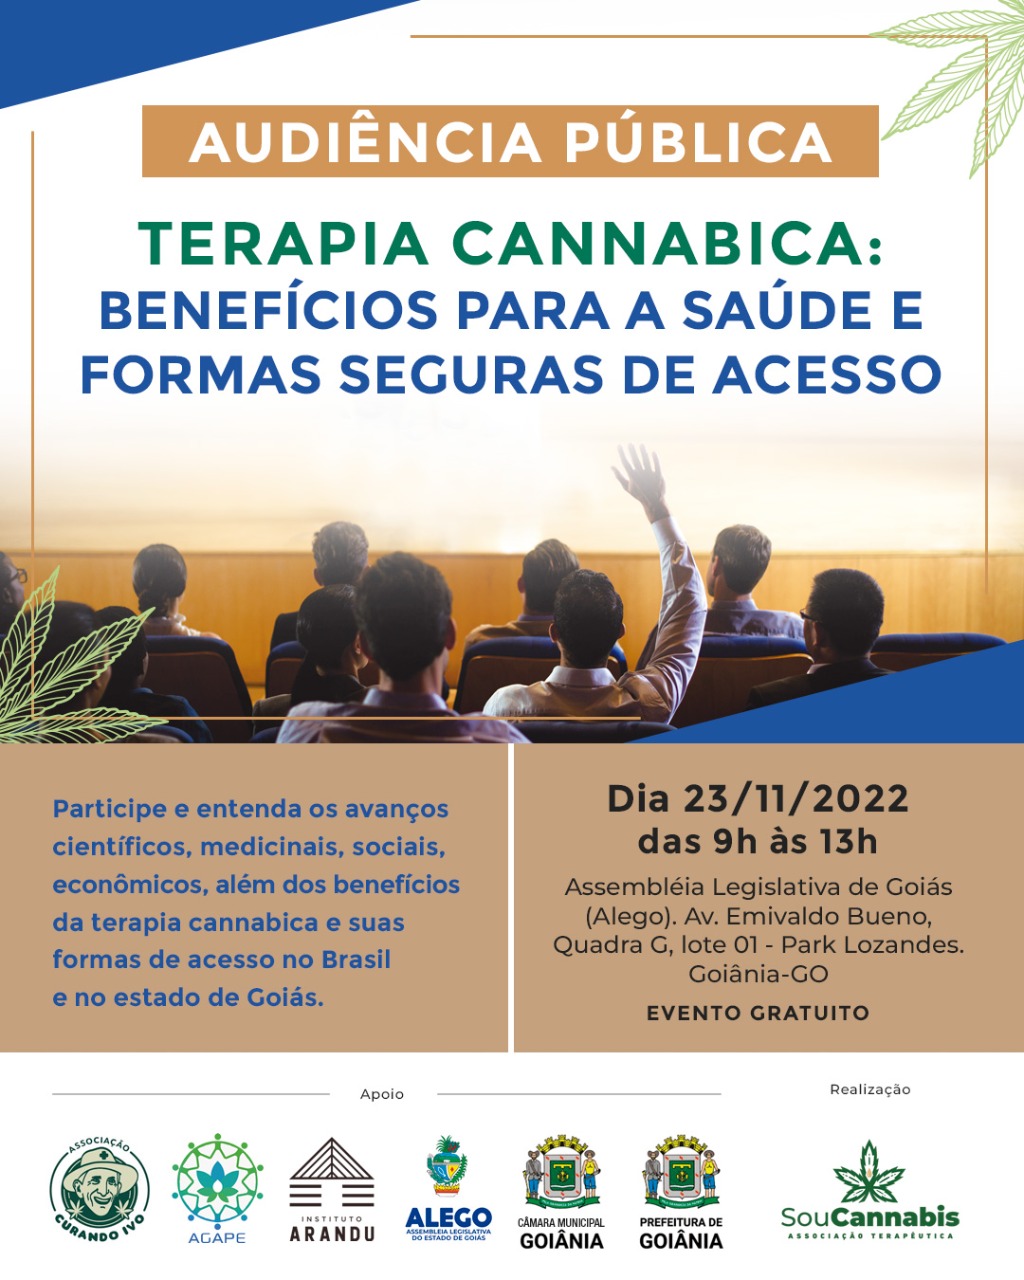 Uso medicinal da cannabis será tema de audiência pública na Assembleia Legislativa de Goiás